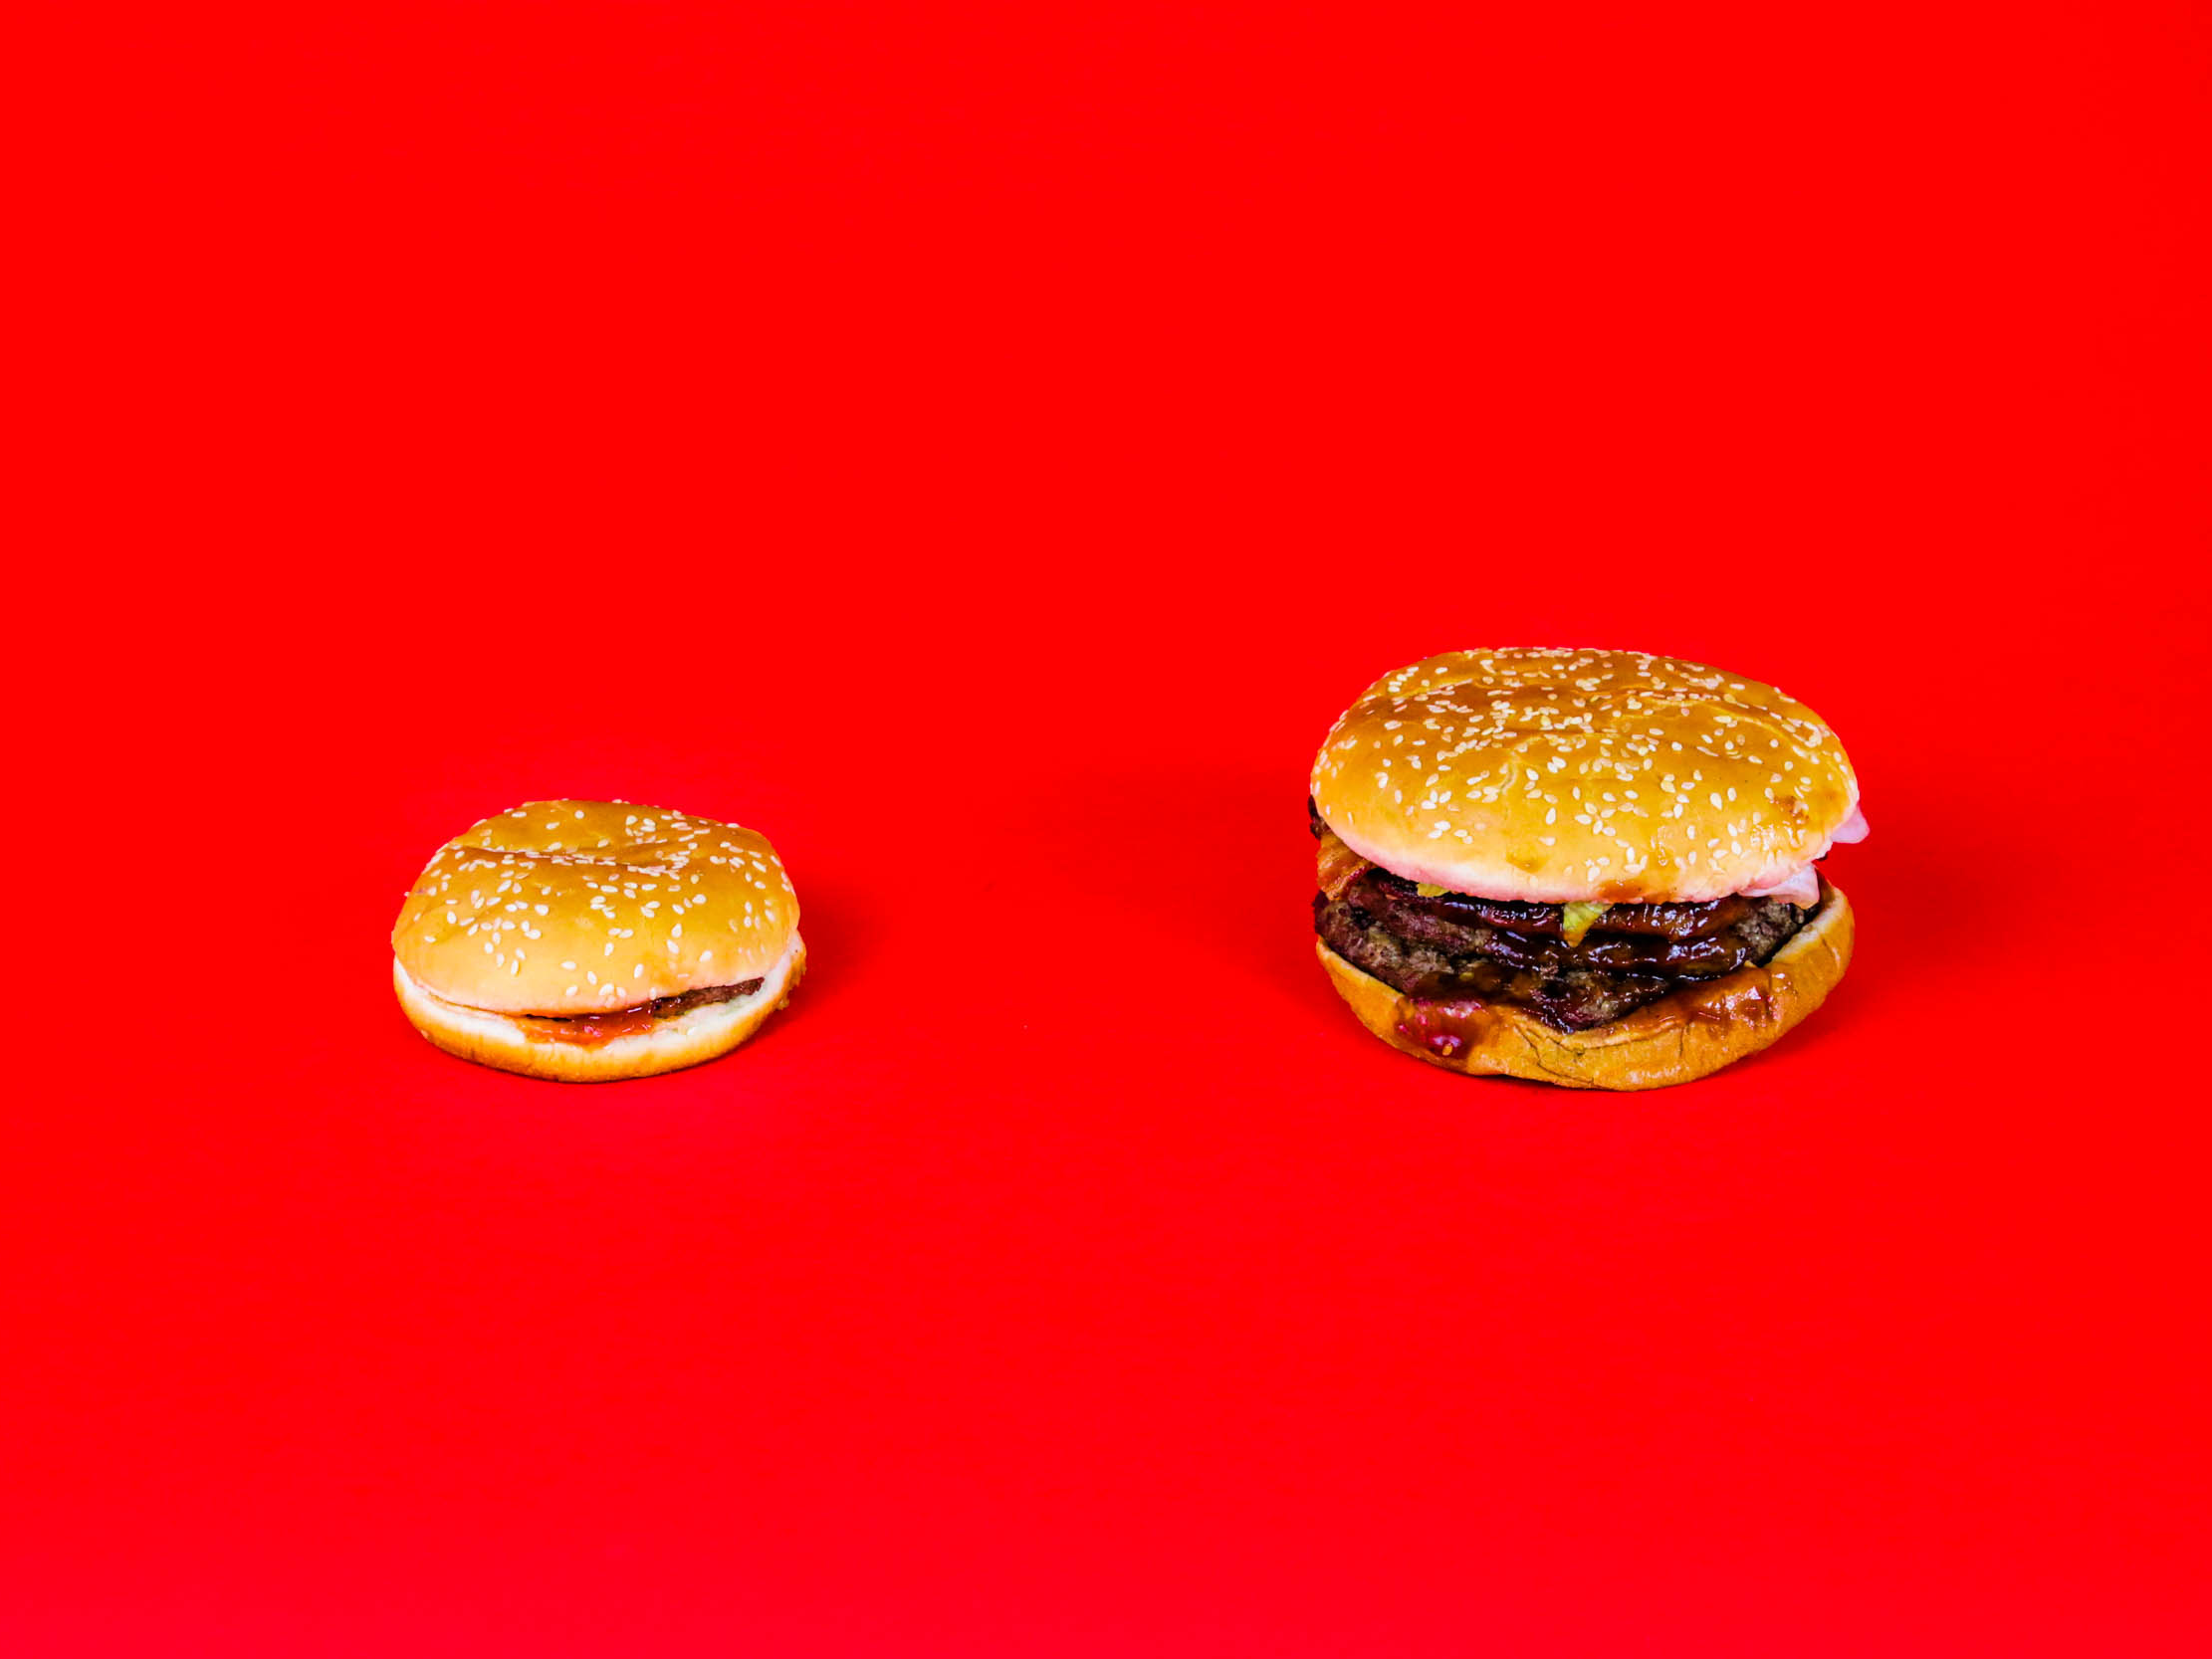 Maar hoe laag - of hoog - vliegt Burger King in termen van voedselkwaliteit? Om daarachter te komen vergeleek ik het duurste op de menukaart, de BBQ Bacon Triple Whopper, met de goedkoopste, de traditionele hamburger.